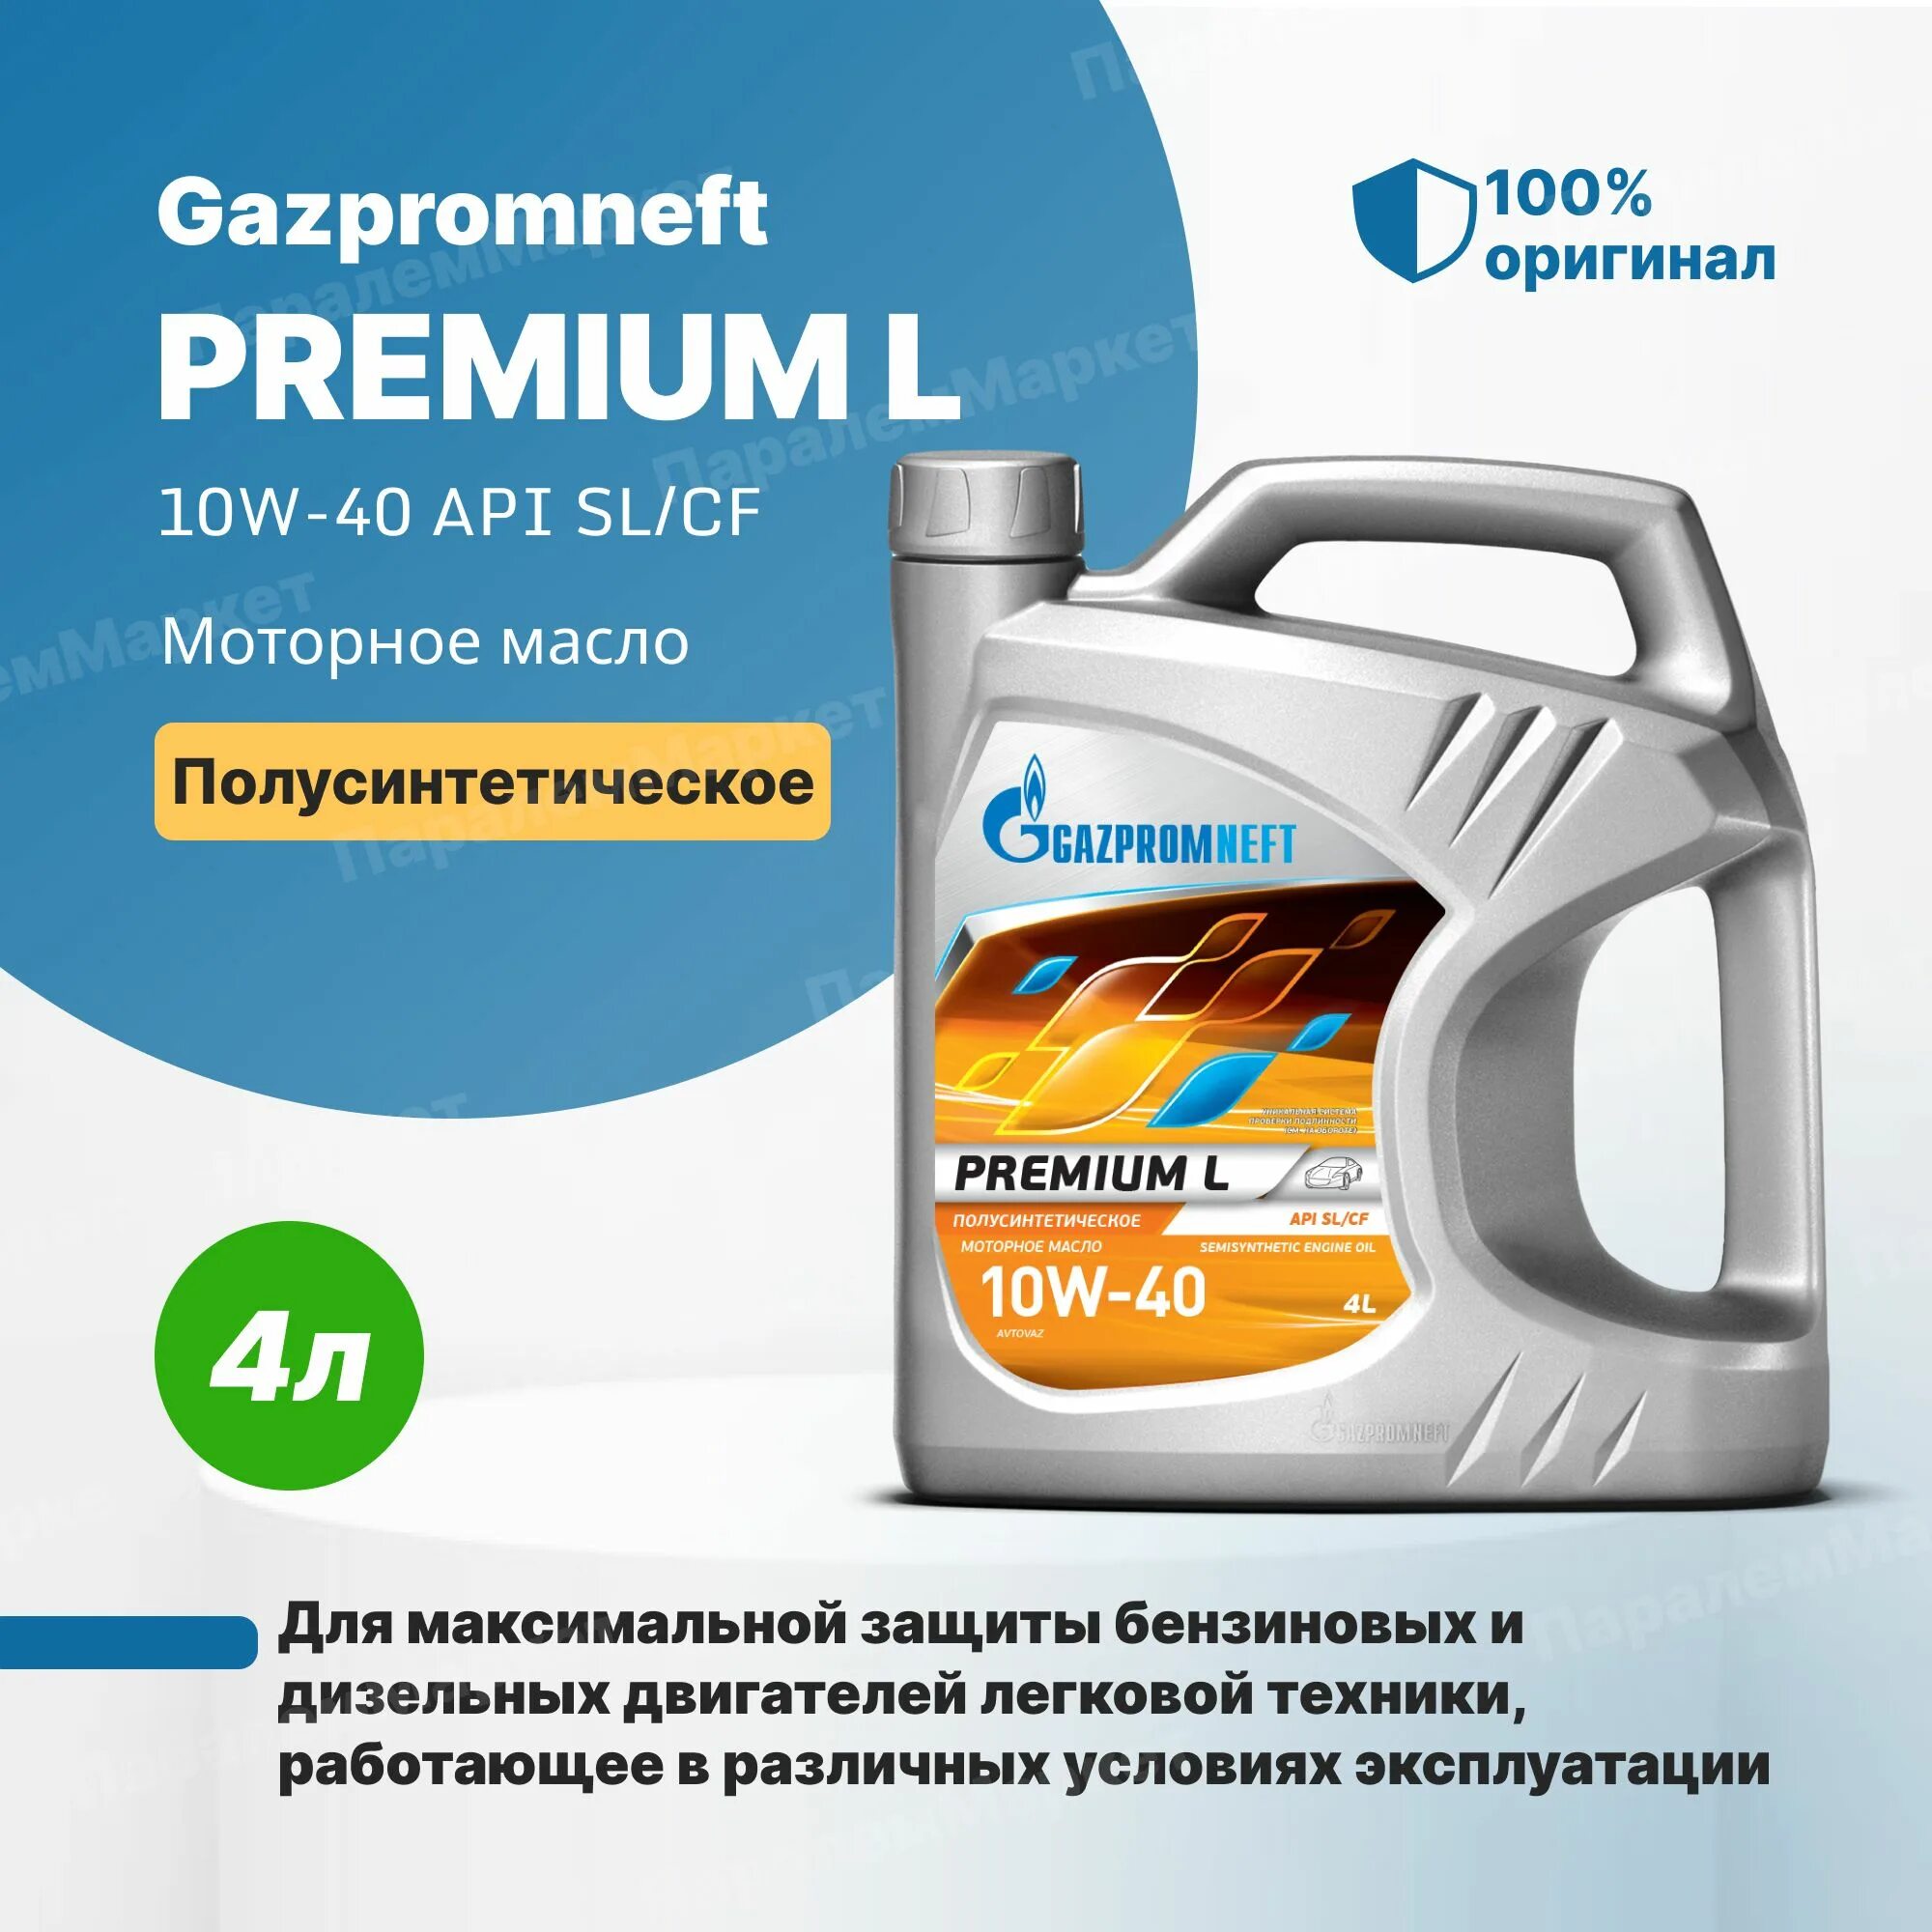 Gazpromneft масло моторное Premium l 10w-40 полусинтетическое 4 л. Газпромнефть премиум л 10w-40. Масло Газпромнефть 10w 40 премиум л.